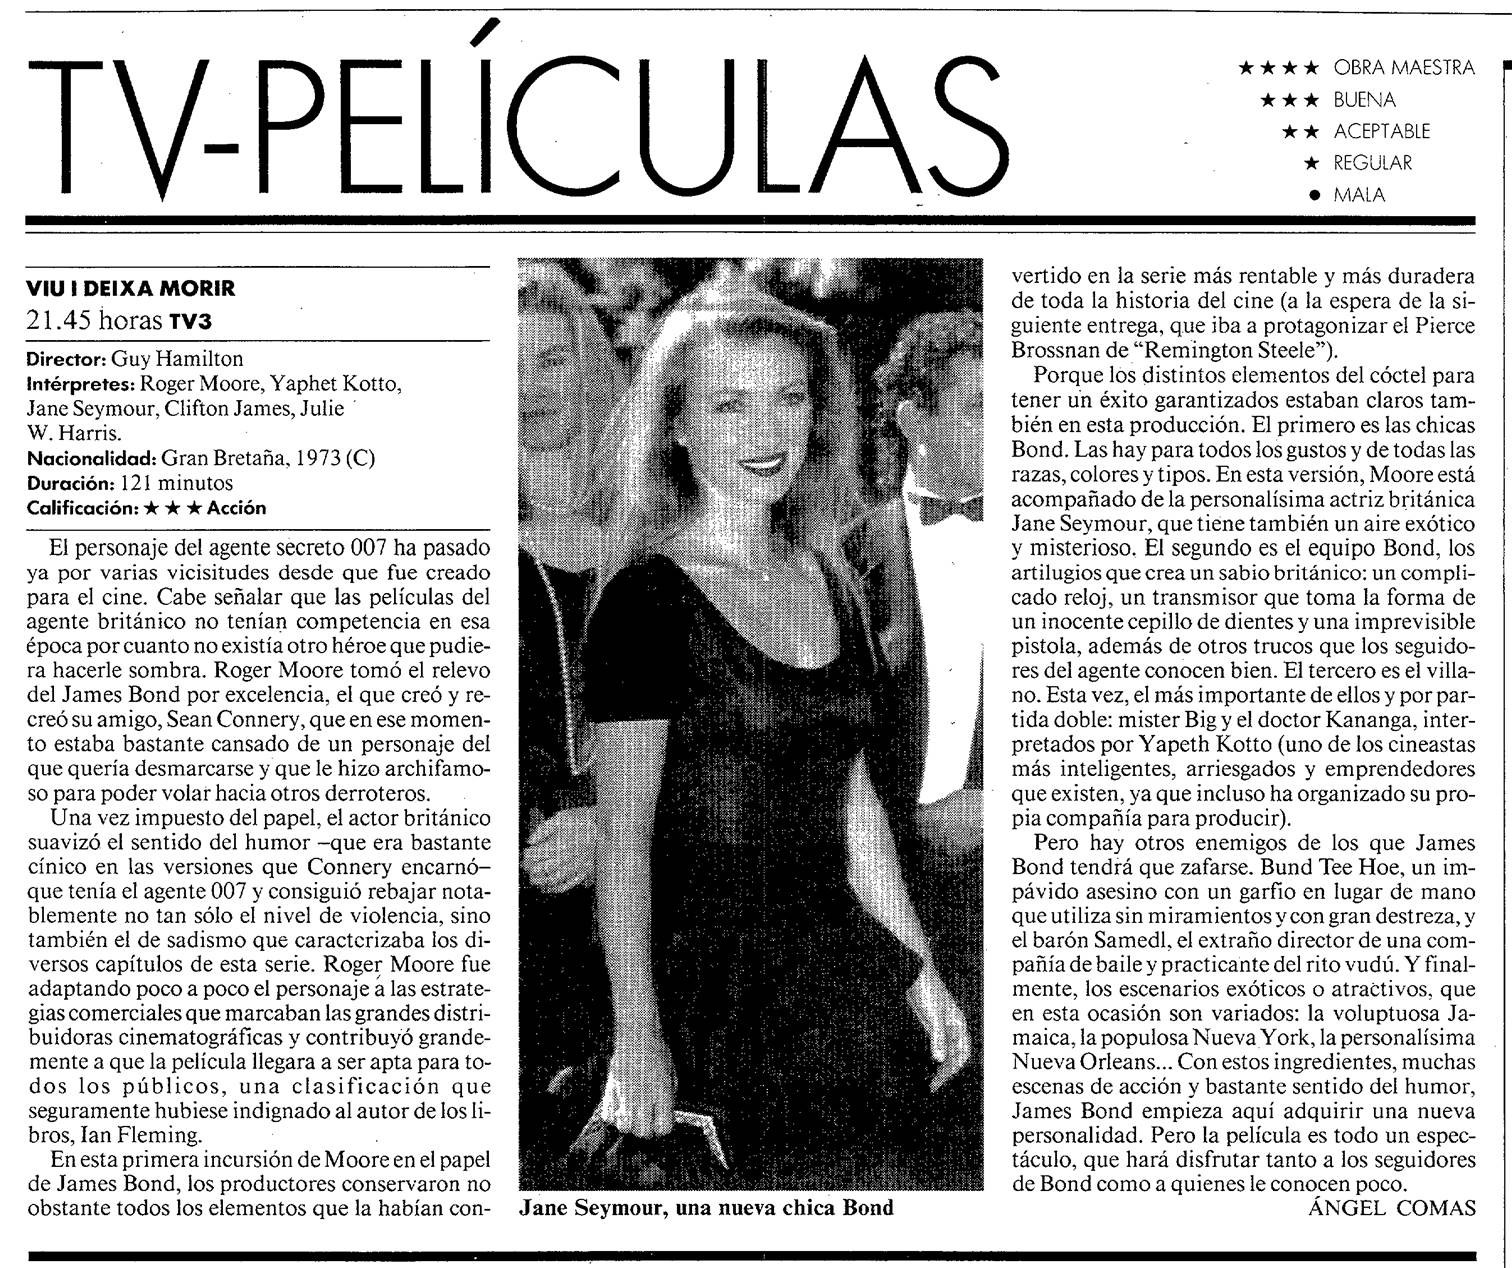 08 1994 09 19 La Vanguardia Revista 008 TV3